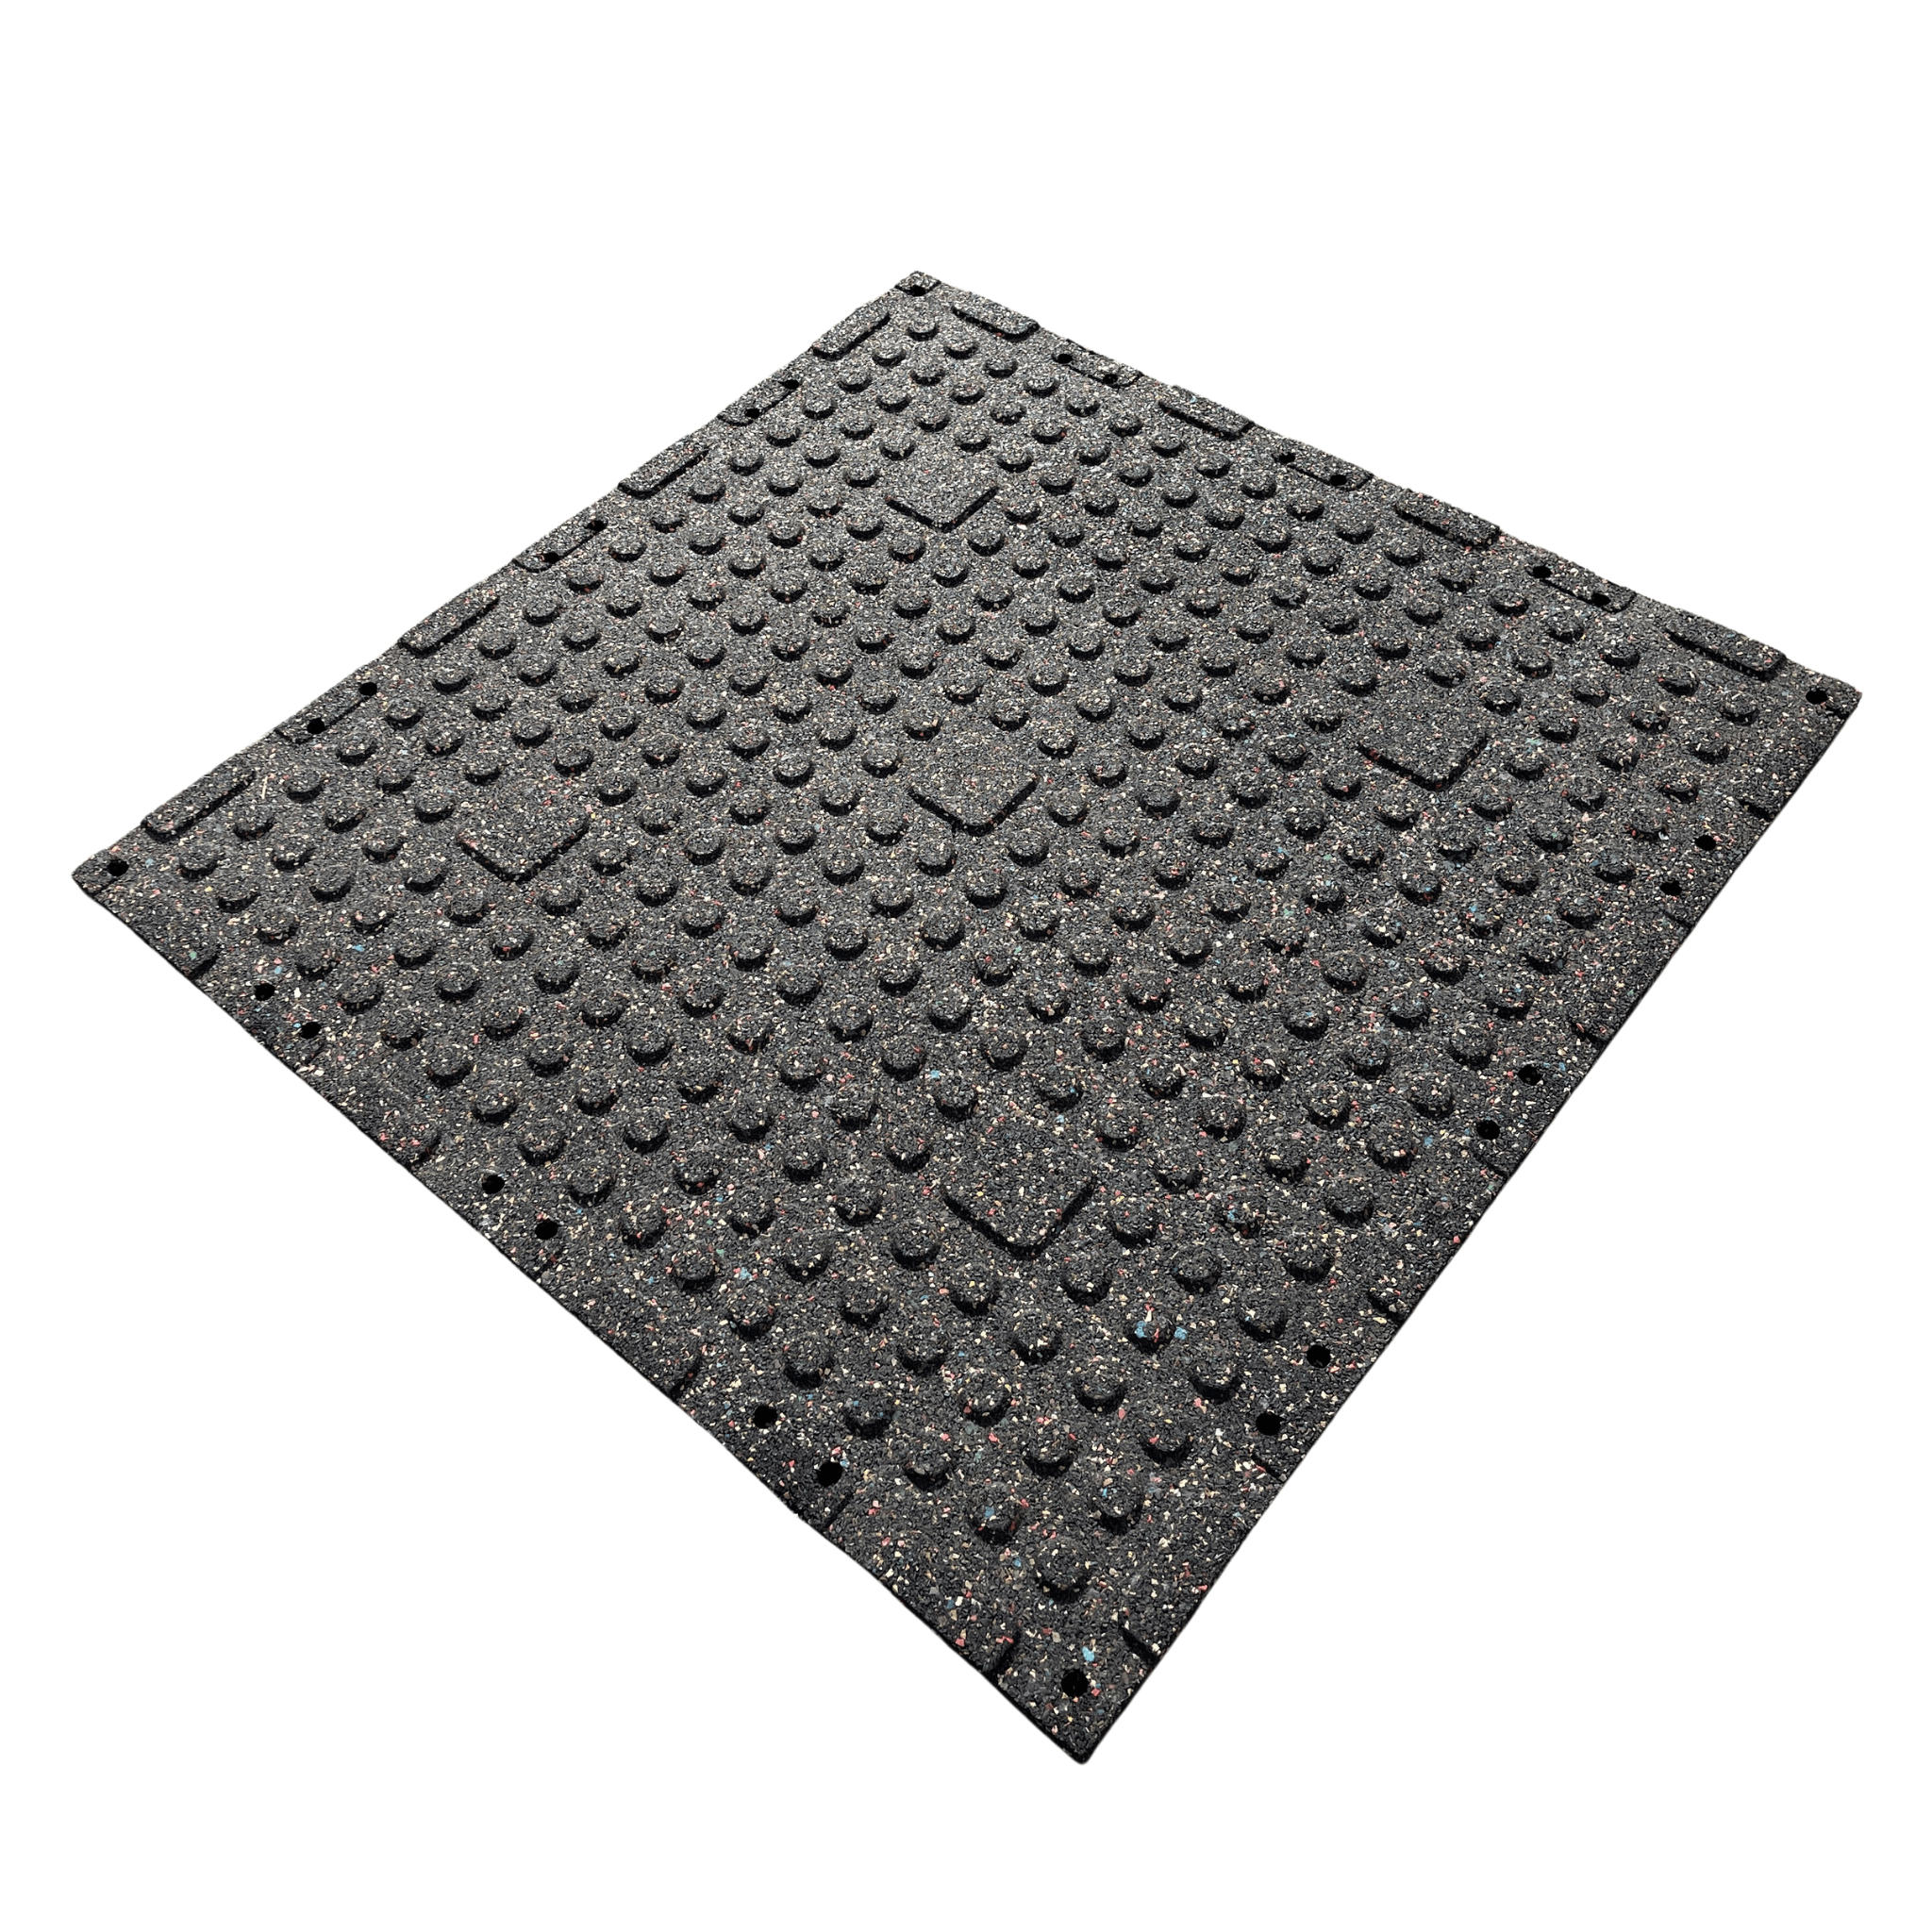 Single 30mm Rubber Gym Flooring Dual Density EPDM Rubber Dense Tile Mat 1m x 1m BLACK | INSOURCE